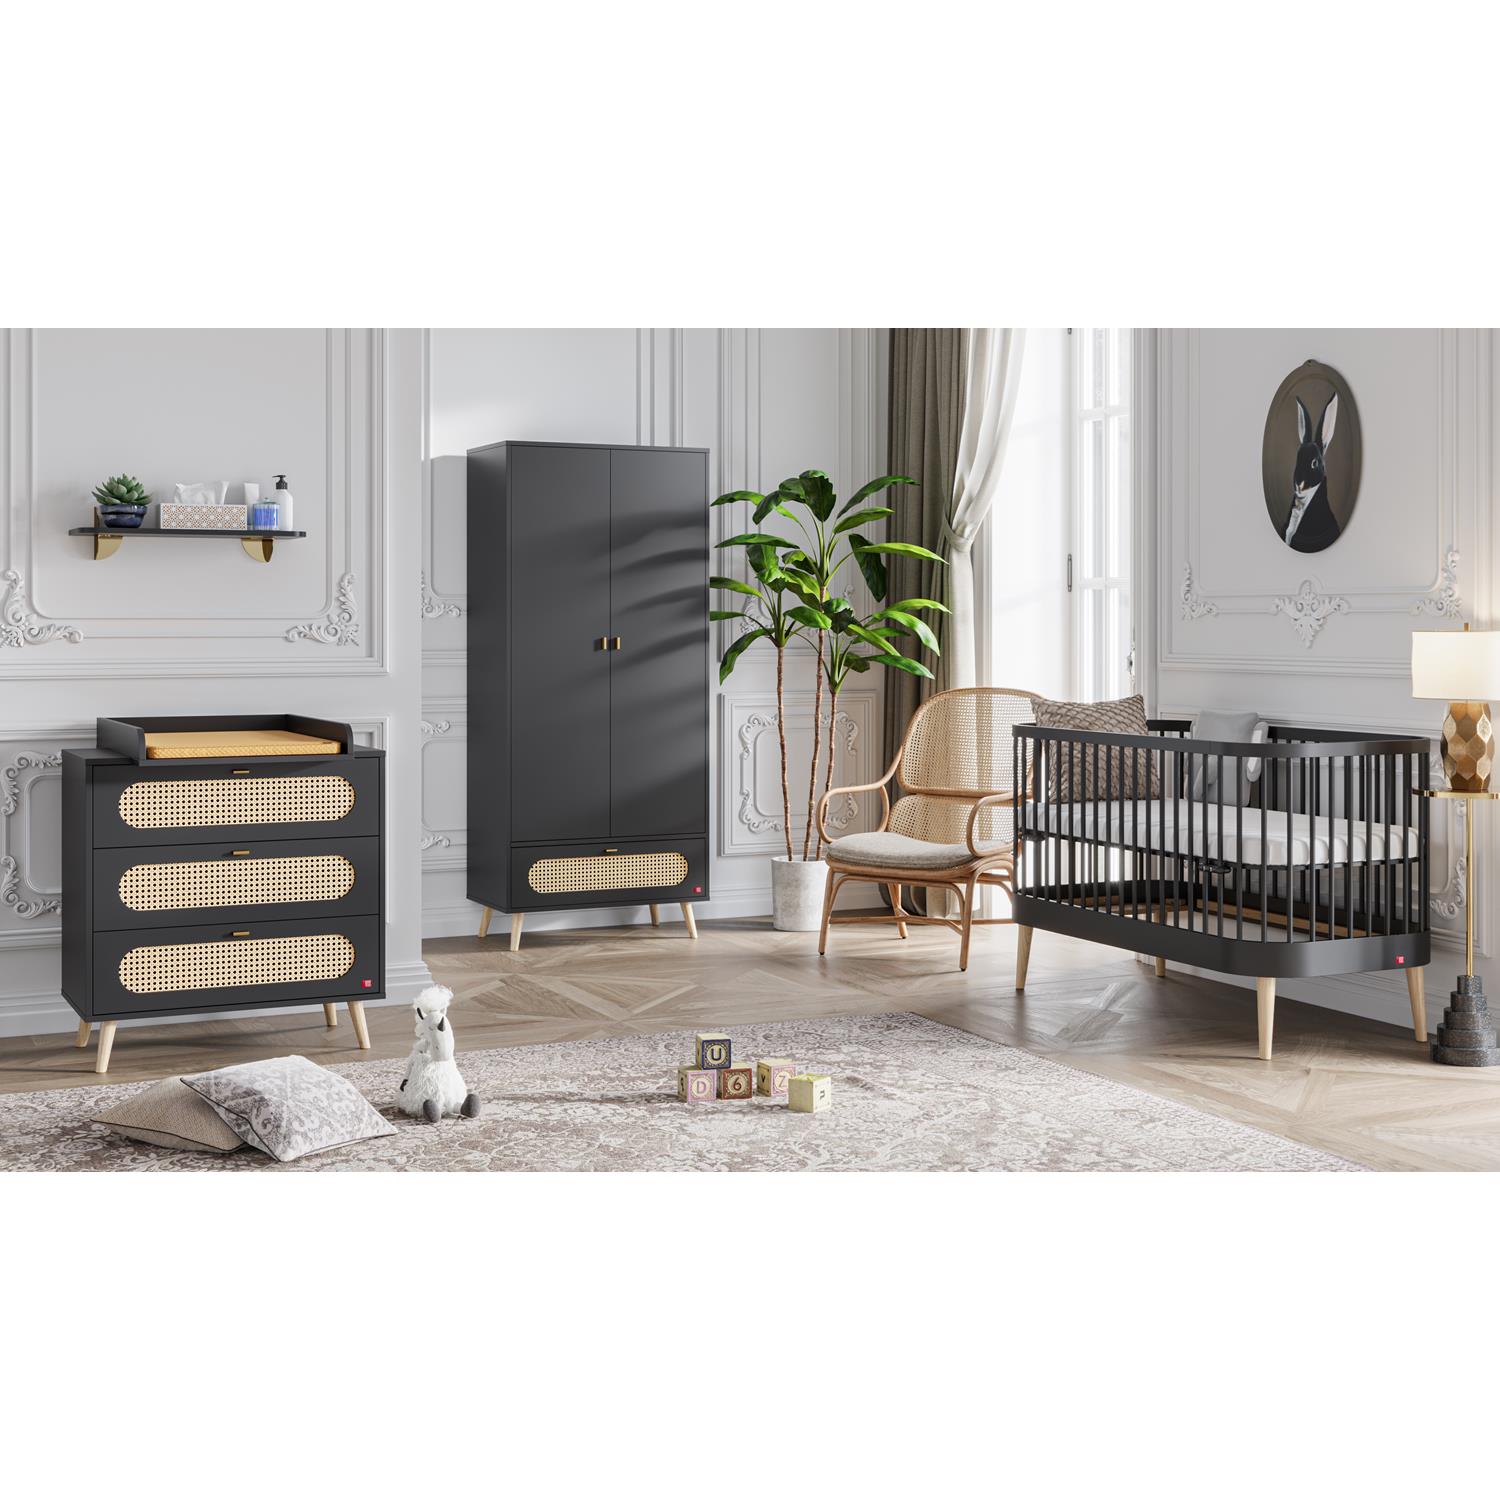 Chambre bébé complète Canne Paris : lit transformable 70x140, commode, armoire Vox